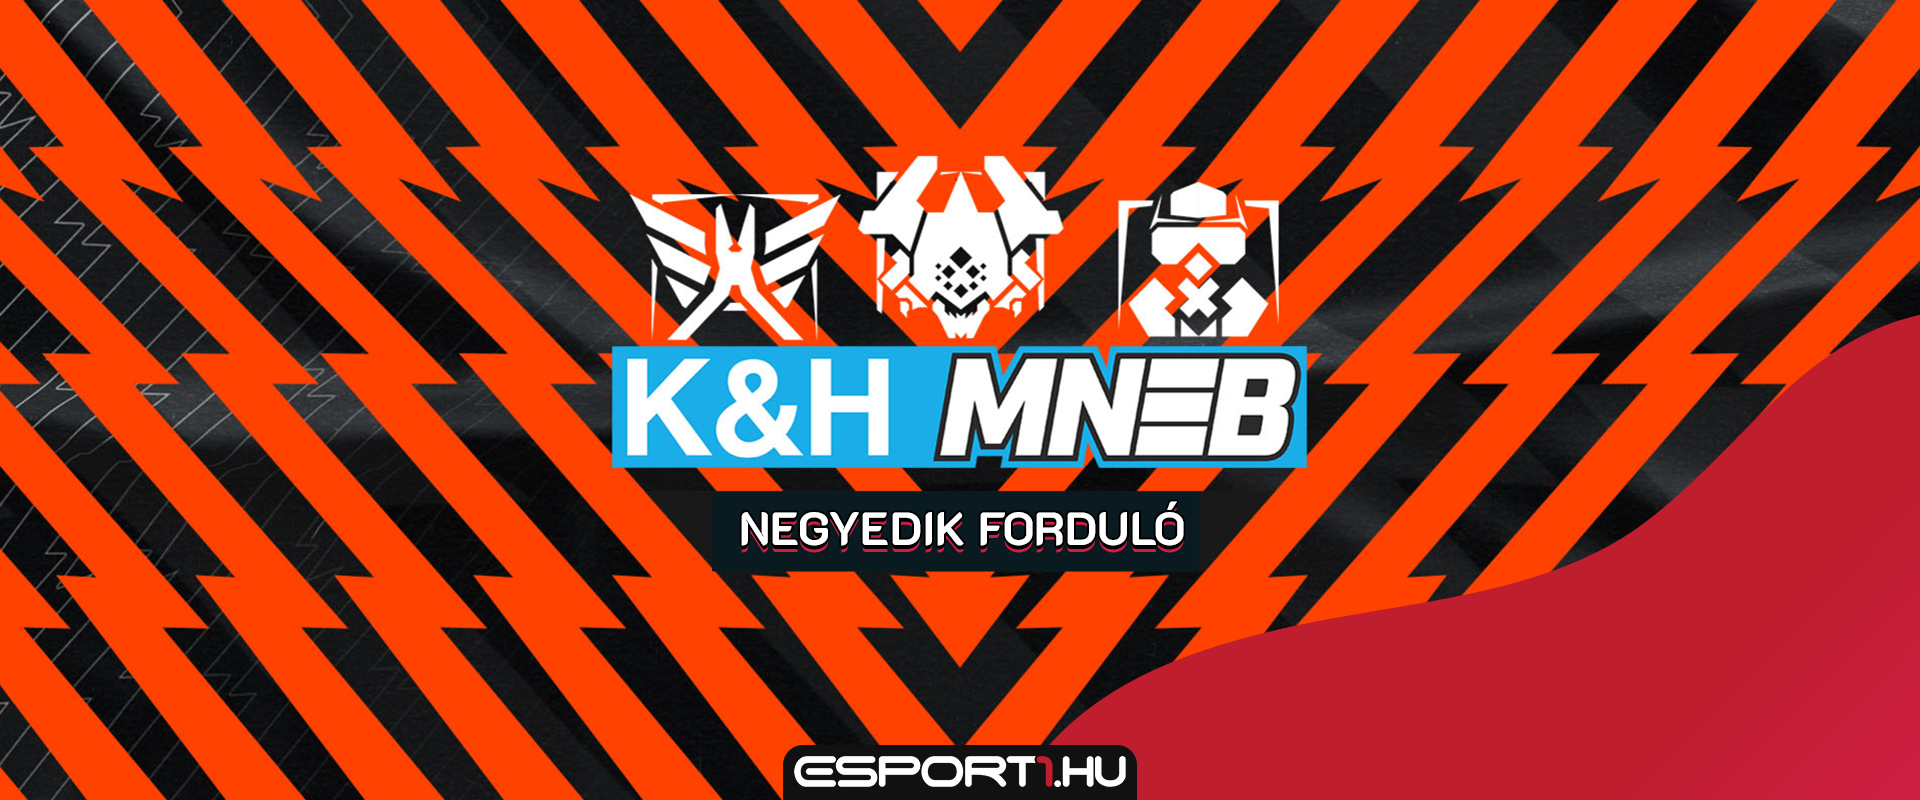 K&H MNEB S2: ezek a csapatok jutottak tovább az utolsó osztályozó kupáról